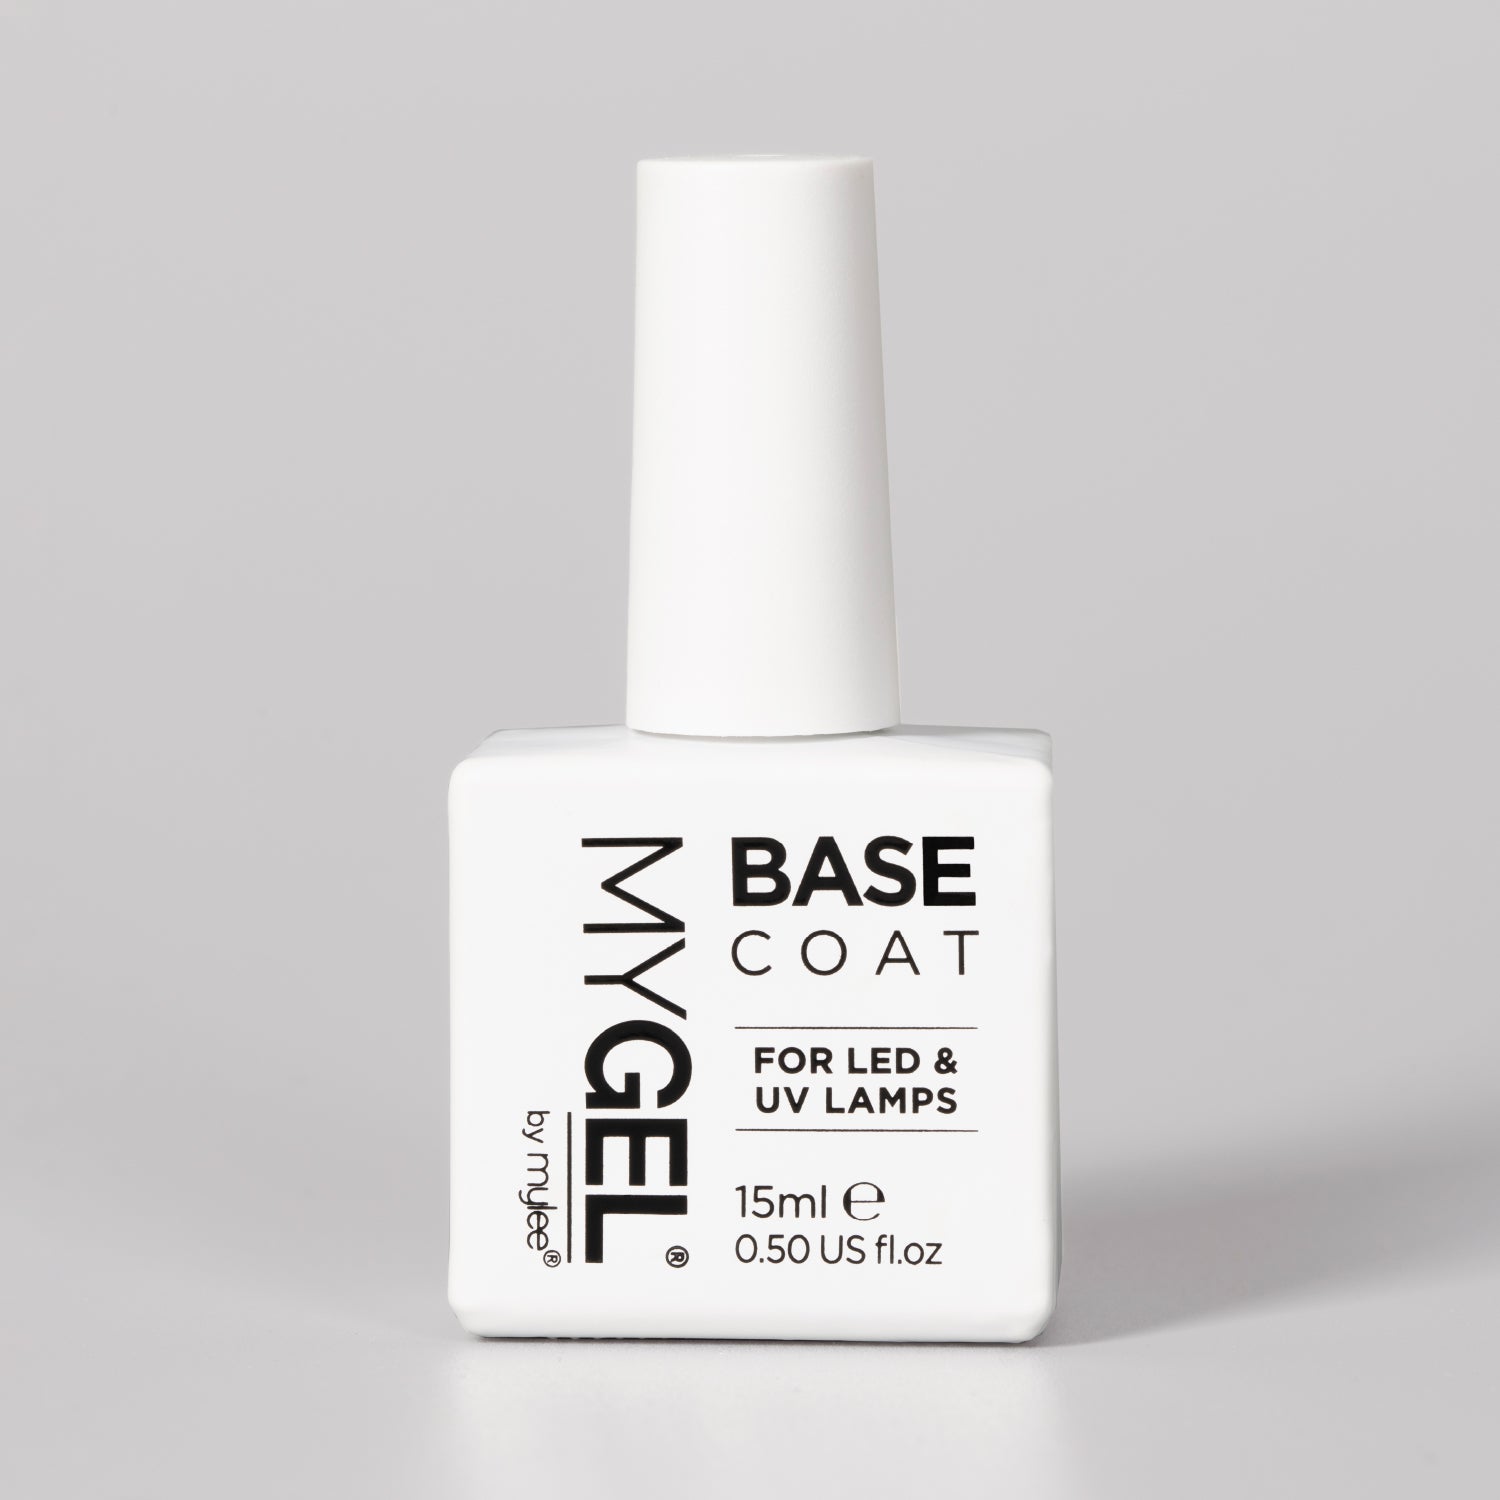 Image of Mylee Base Coat LED/UV Gel Nail Polish 15ml – Long Lasting At Home Manicure/Pedicure, High Gloss And Chip Free Wear Nail Varnish